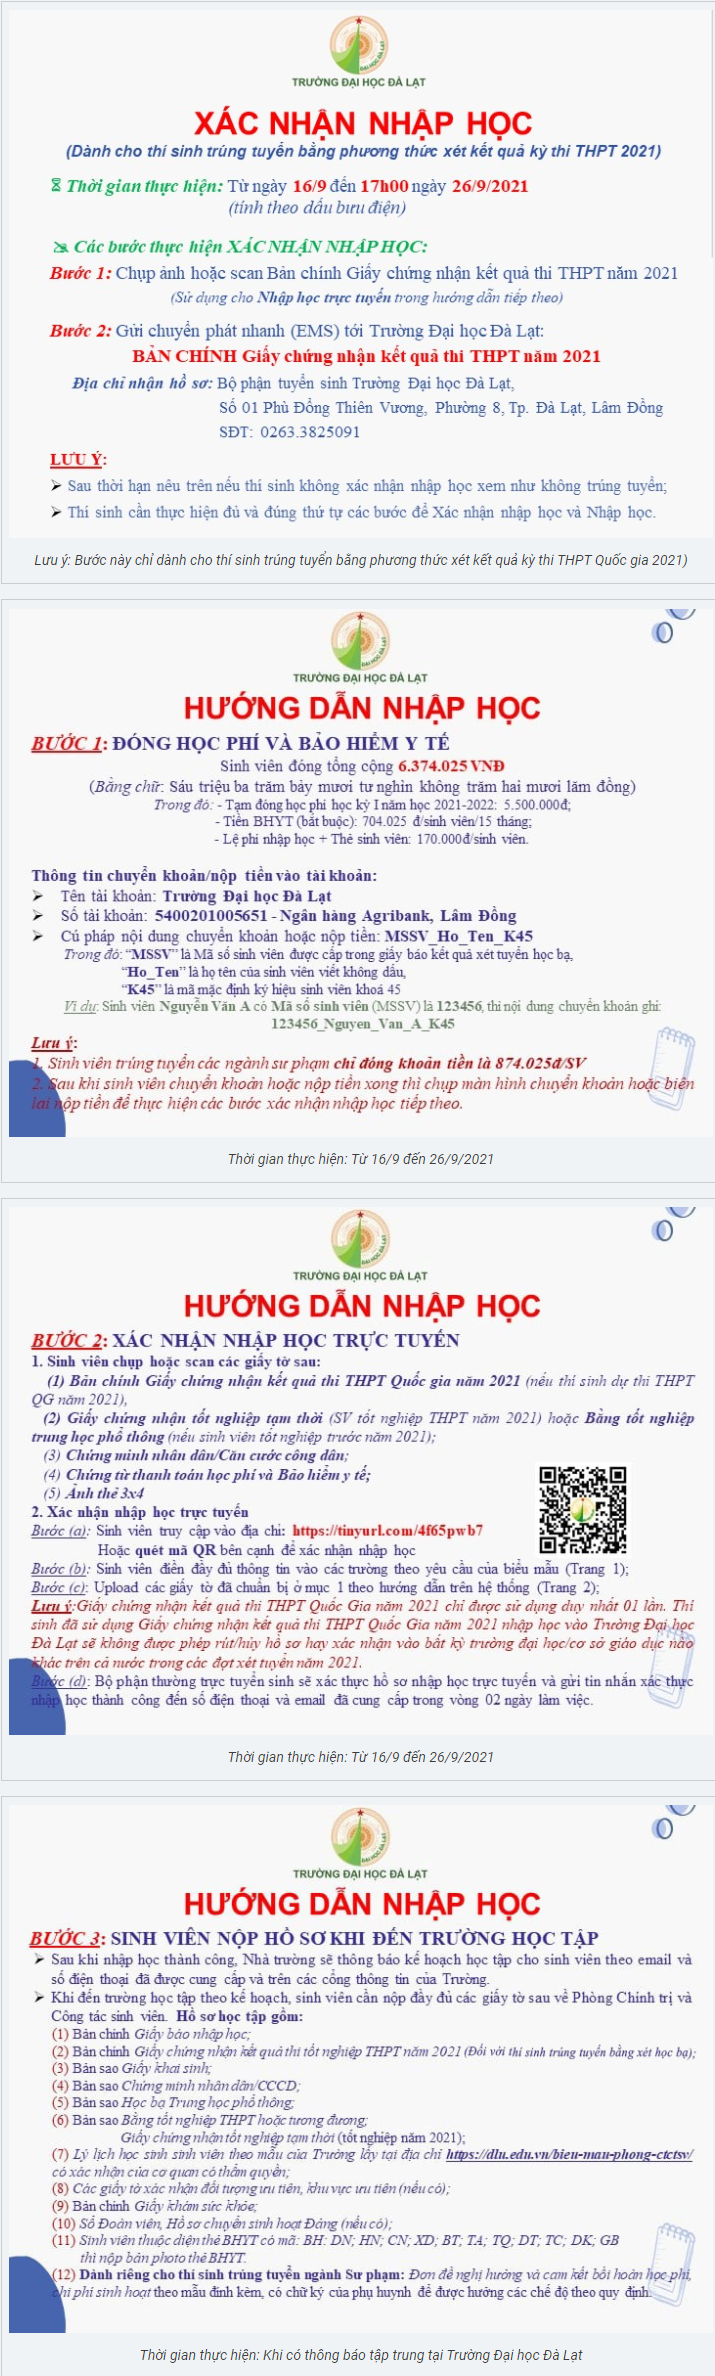 Huong dan nhap hoc Dai hoc Da Lat nam 2021